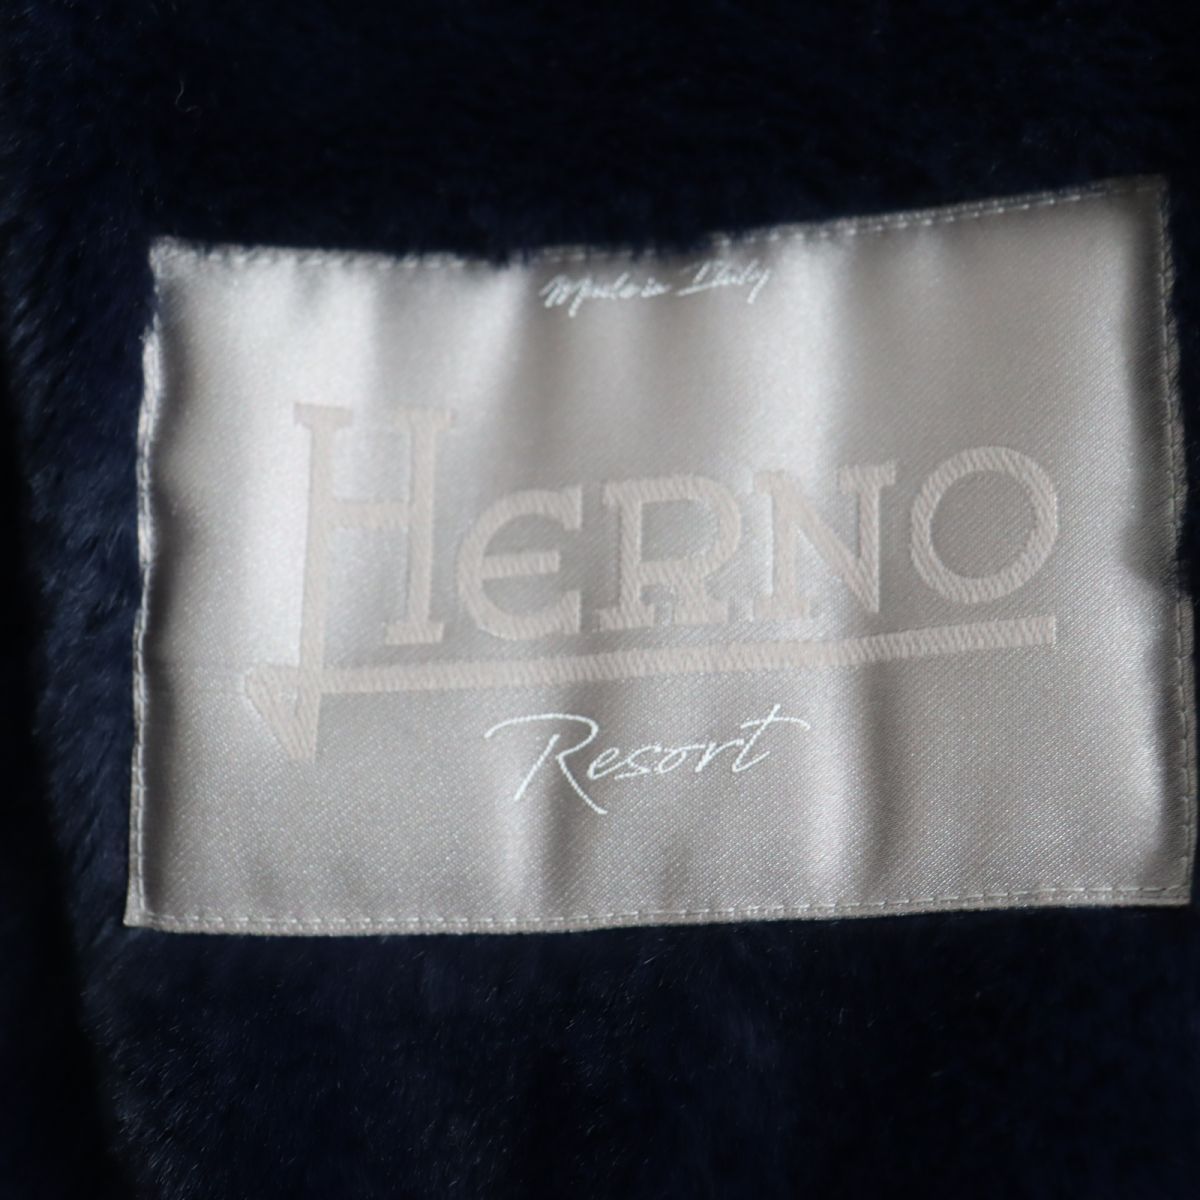 美品◆19年製 HERNO ヘルノ リゾート PA005UR フーデッド ダブルジップ×スナップボタン 中綿入りコート ネイビー 44 正規品 メンズ